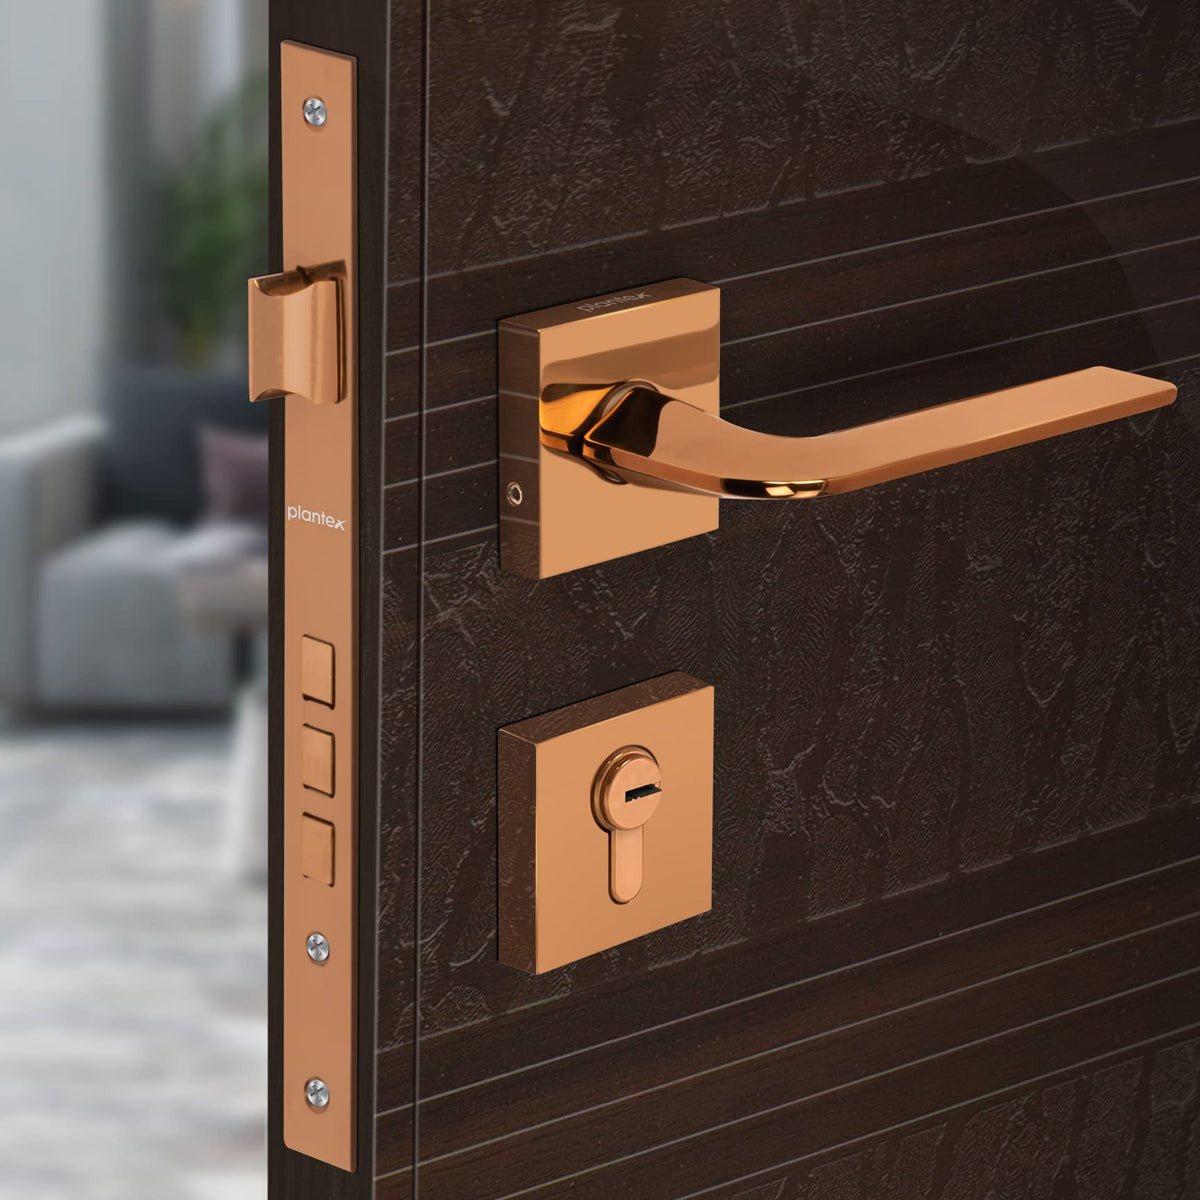 Plantex Heavy Duty Door Lock - Main Door Lock Set with 3 Keys/Mortise Door Lock for Home/Office/Hotel (7105 - PVD Choco)